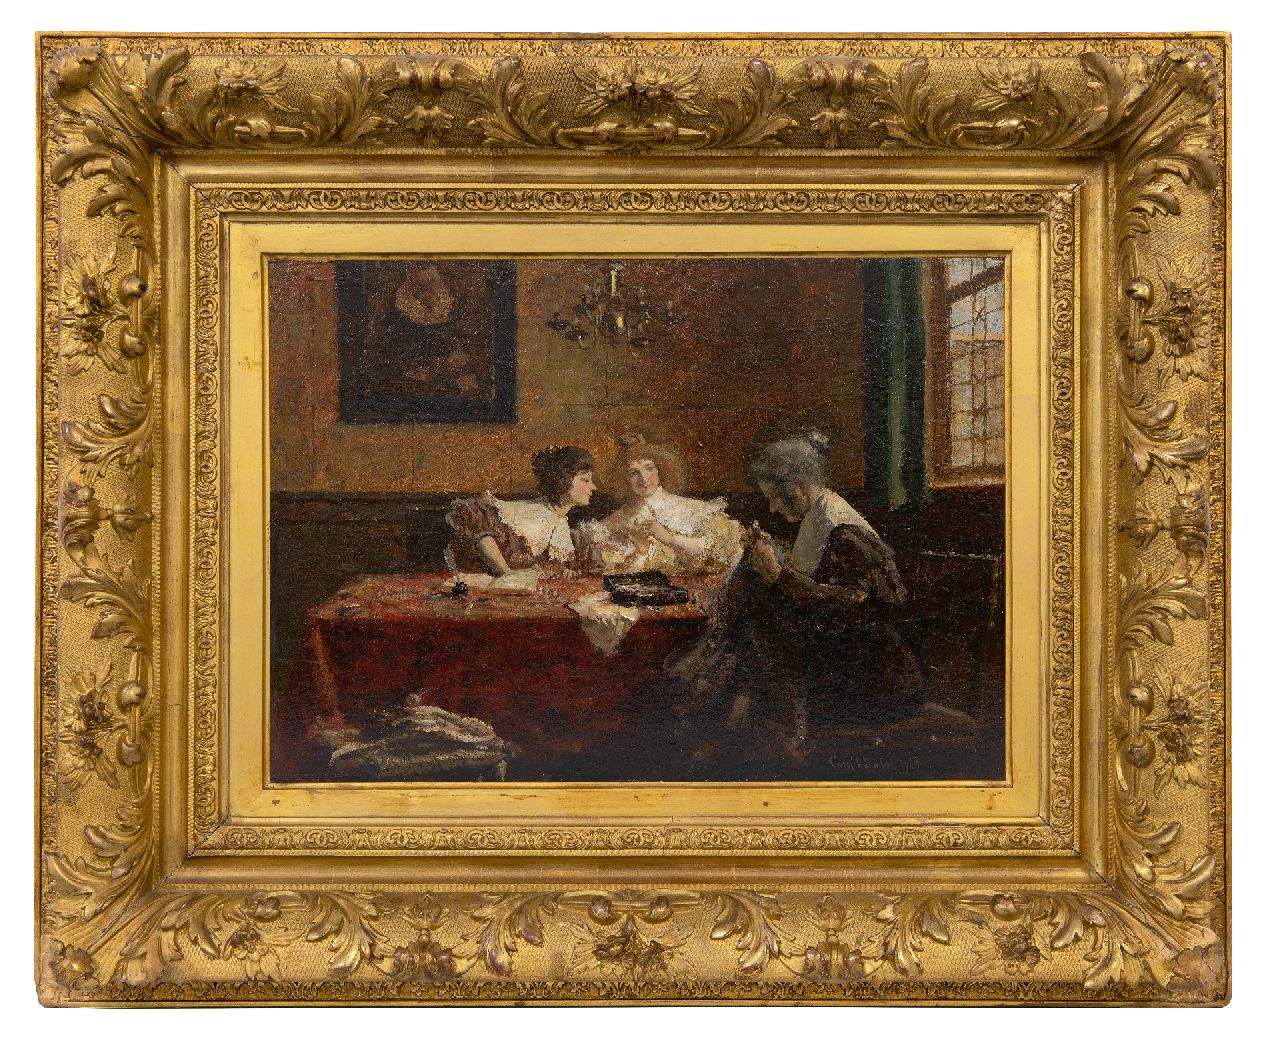 Dake C.L.  | Carel Lodewijk Dake | Schilderijen te koop aangeboden | Drie vrouwen in een interieur, olieverf op paneel 34,9 x 49,1 cm, gesigneerd rechtsonder en gedateerd 1908